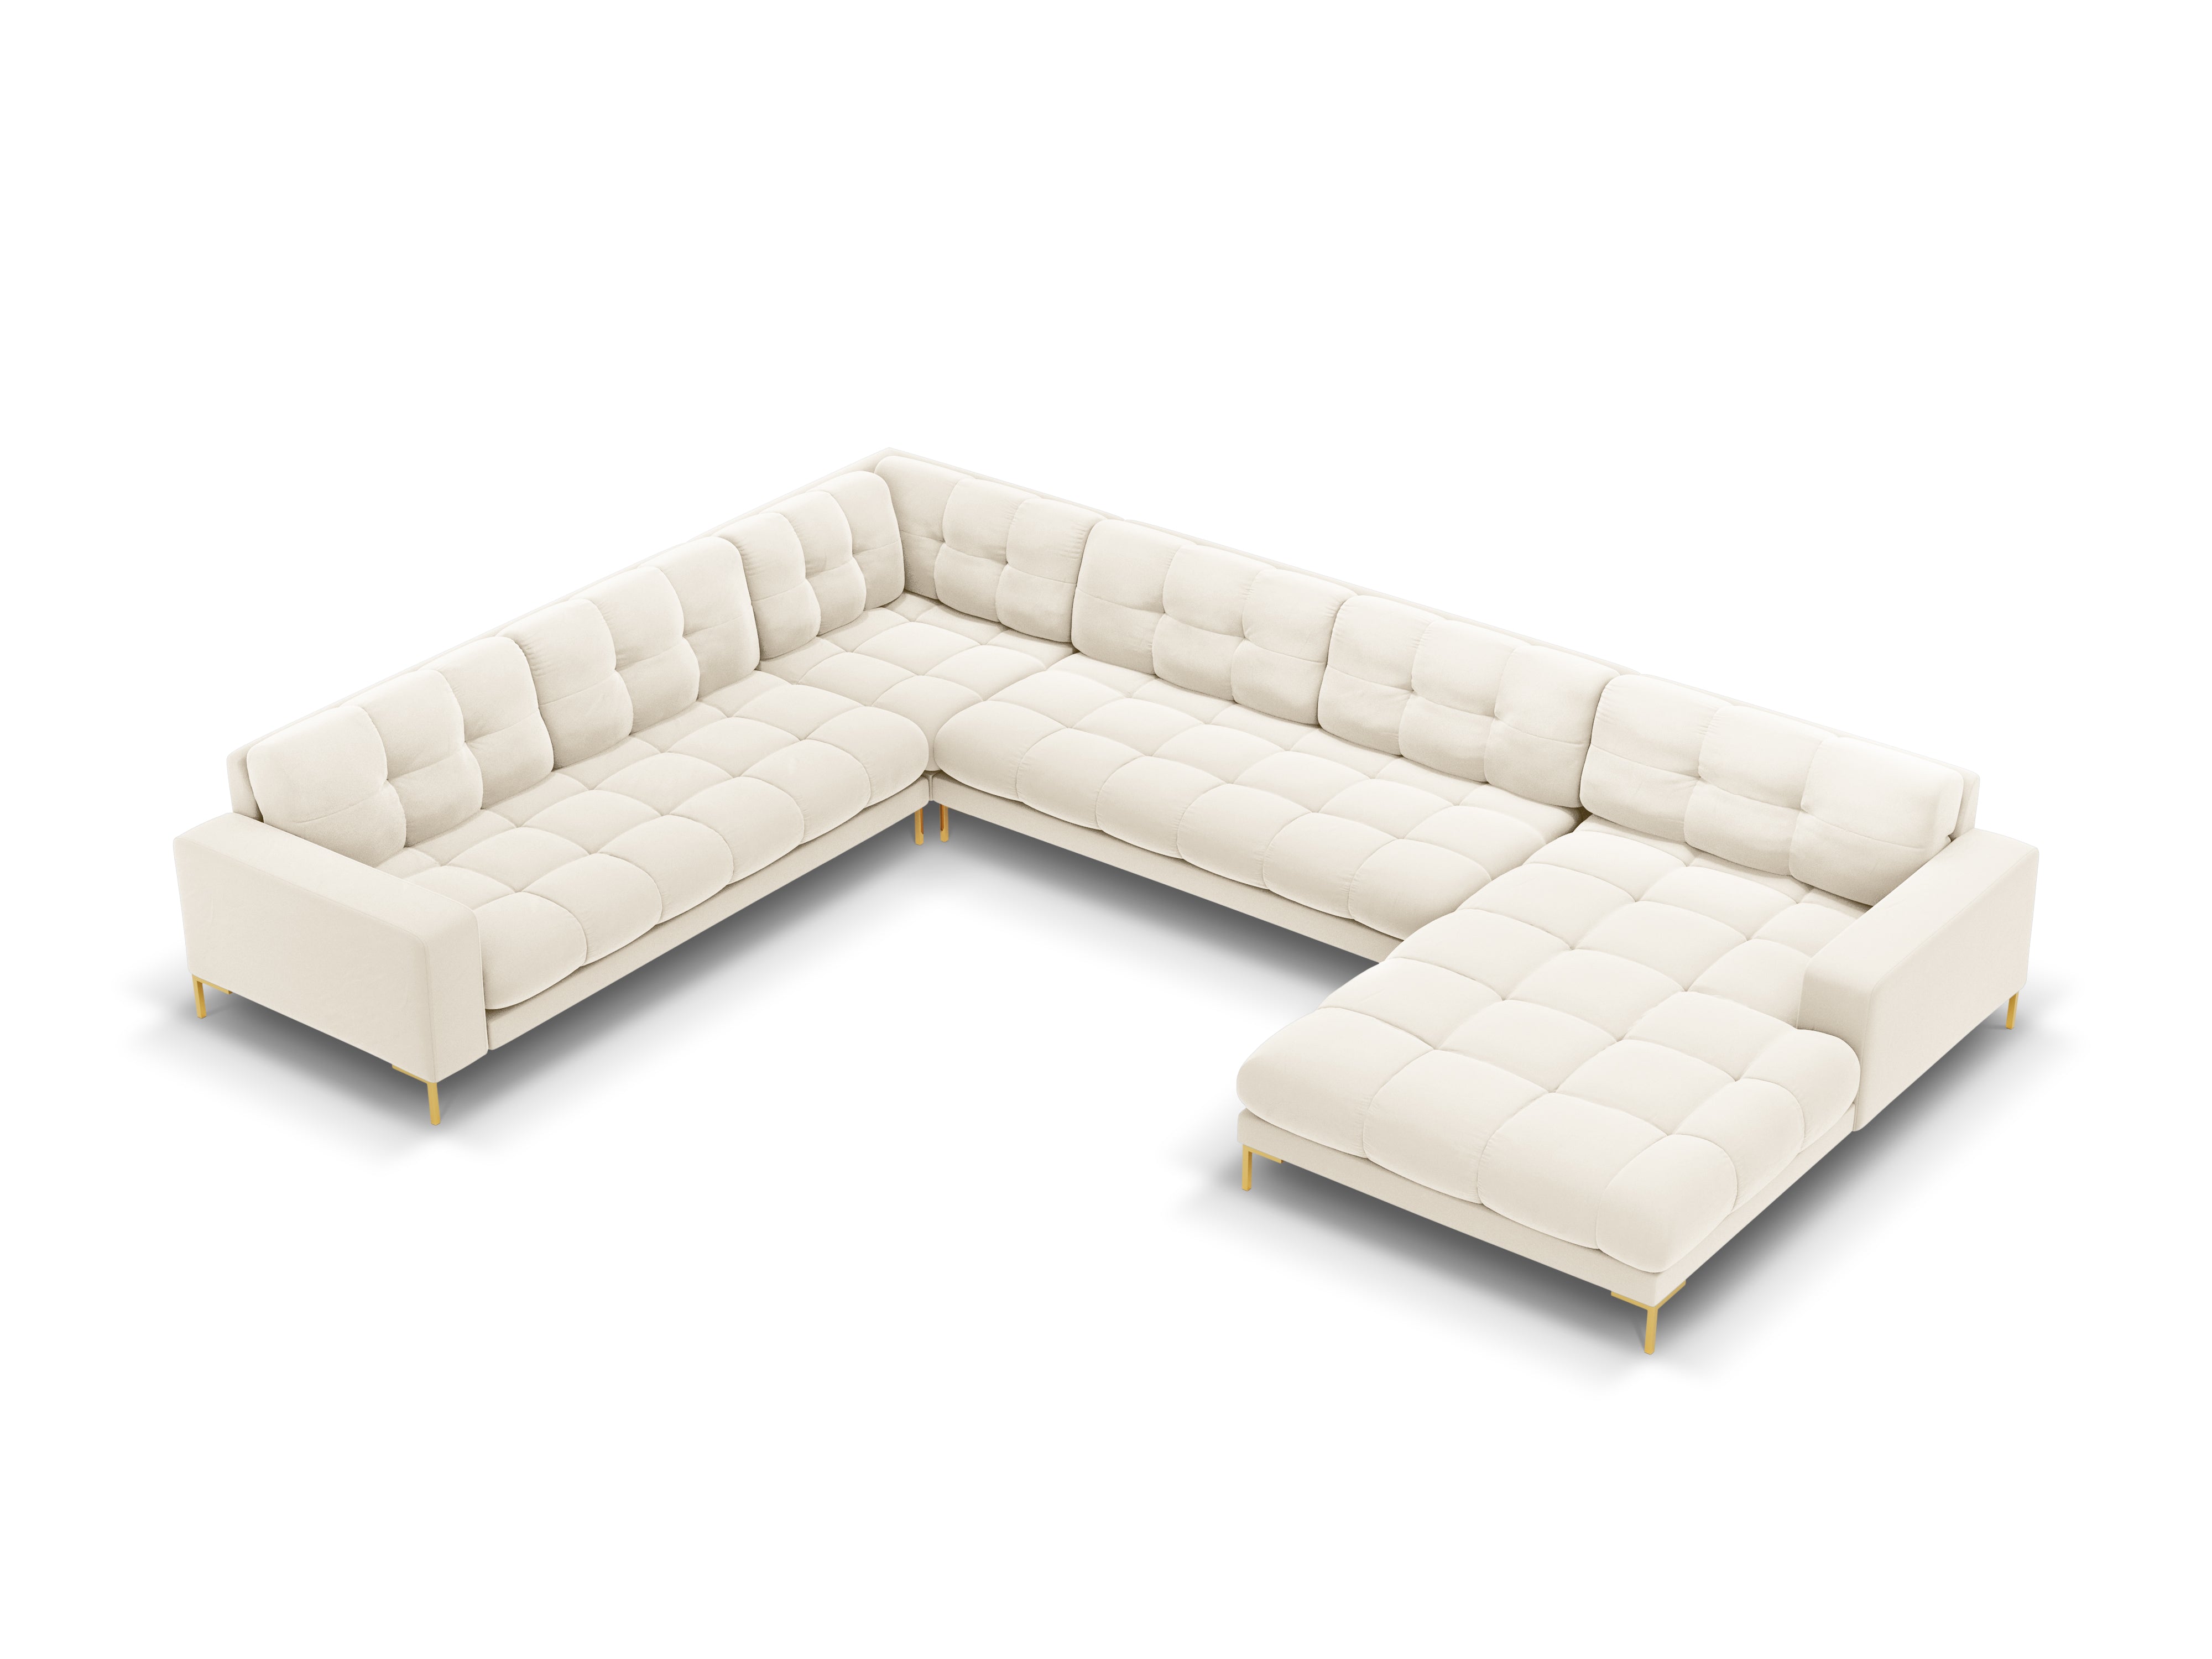 Panoramic velvet sofa left side 7 seater BALI light beige with gold base